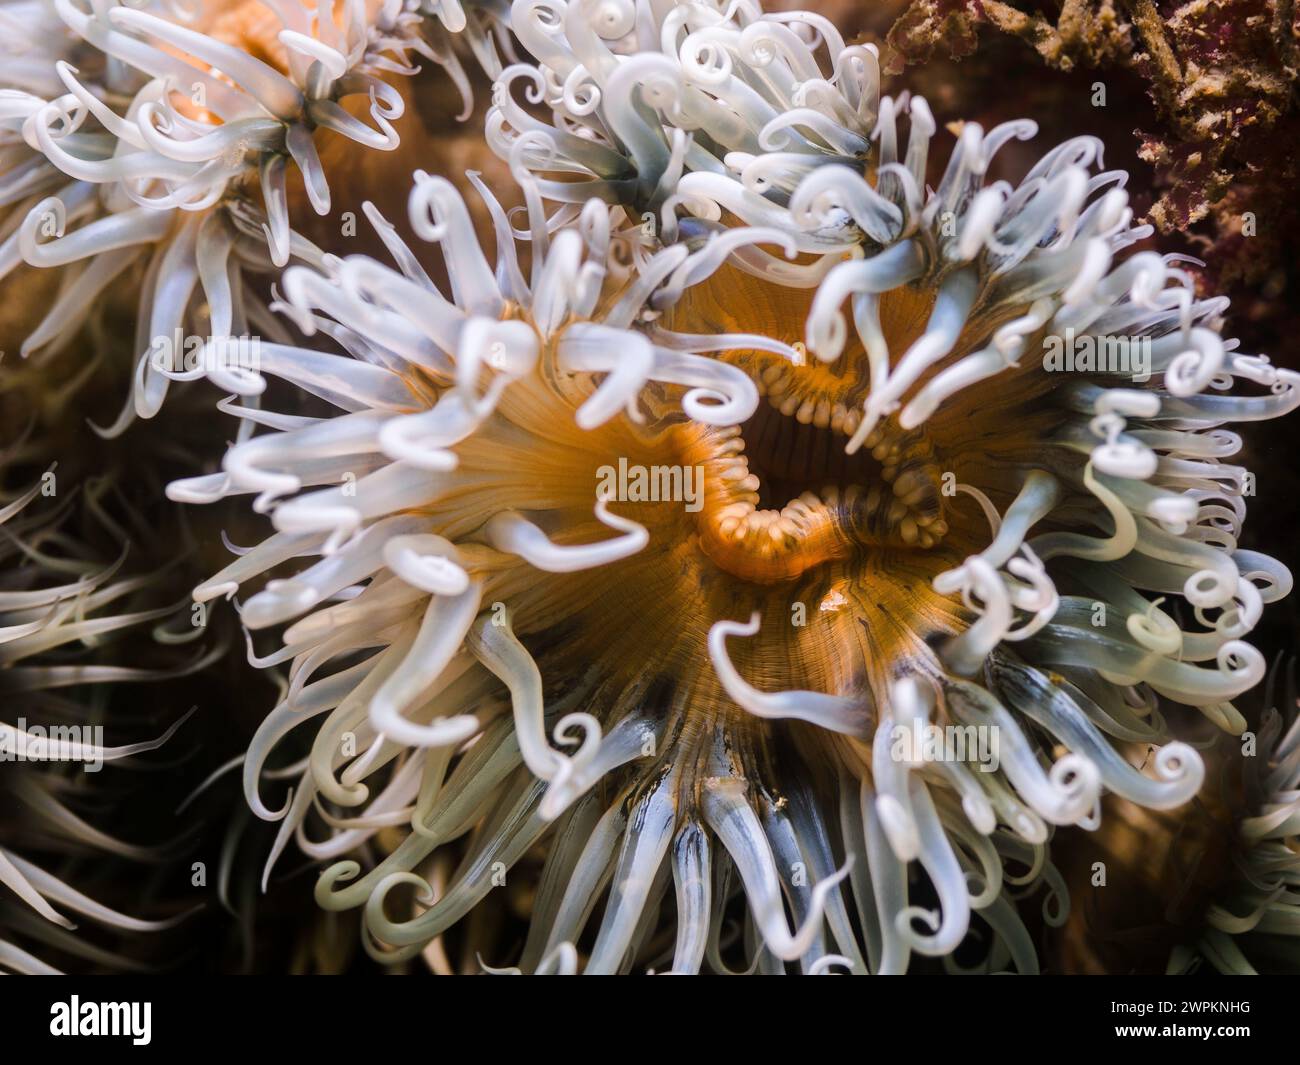 Nahaufnahme einer gestreiften Anemone unter Wasser mit hellgelbem Körper und weißen Tentakeln Stockfoto